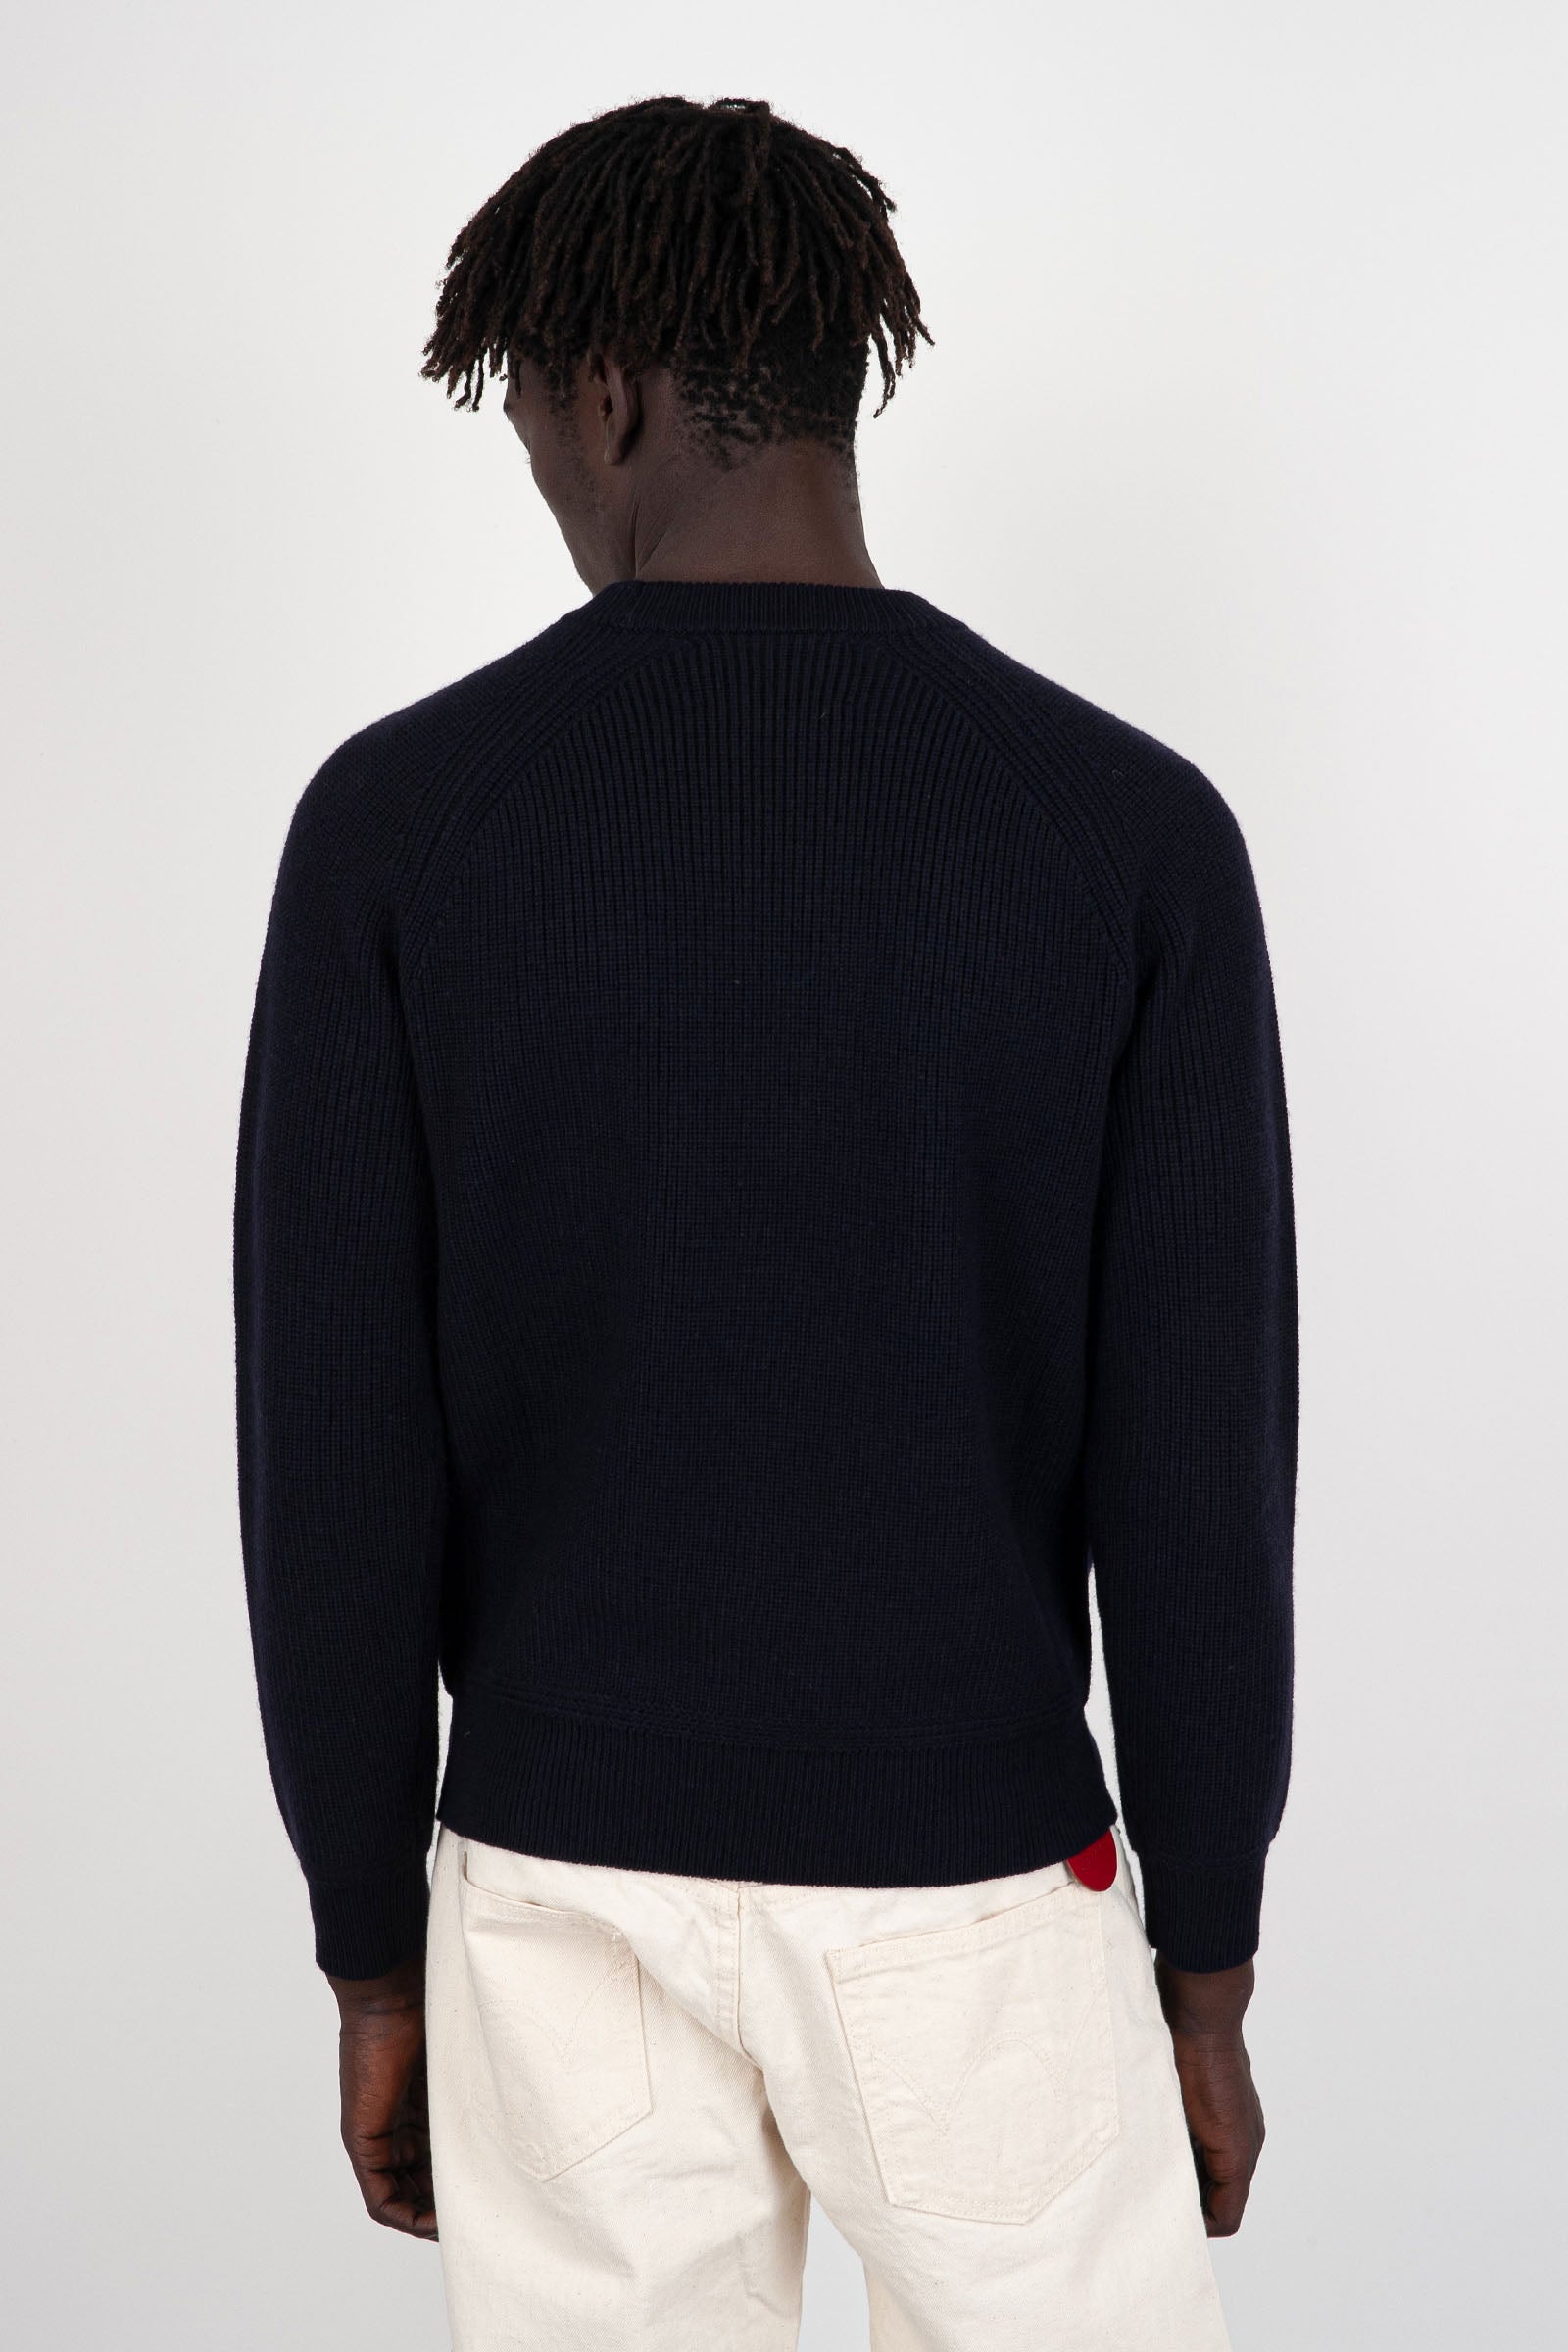 Sebago FortKent Sweater 100% Wool Navy Blue - 4